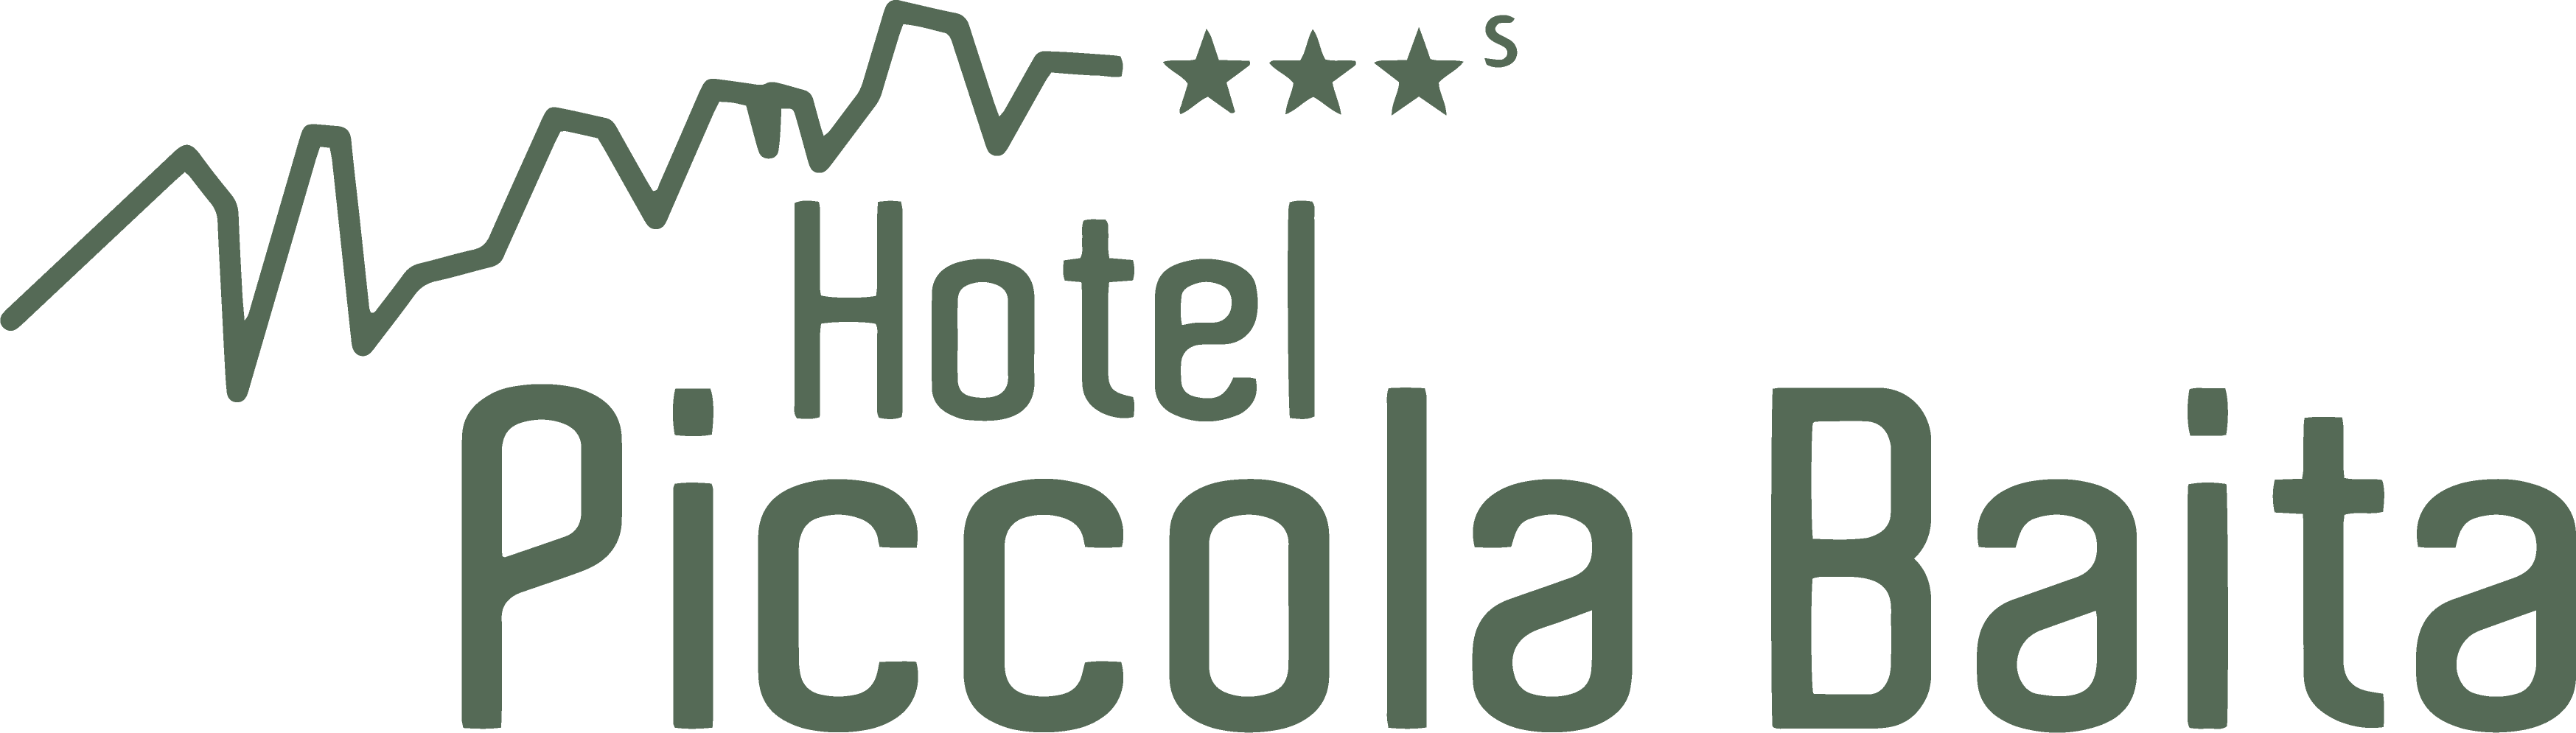 hotelpiccolabaita